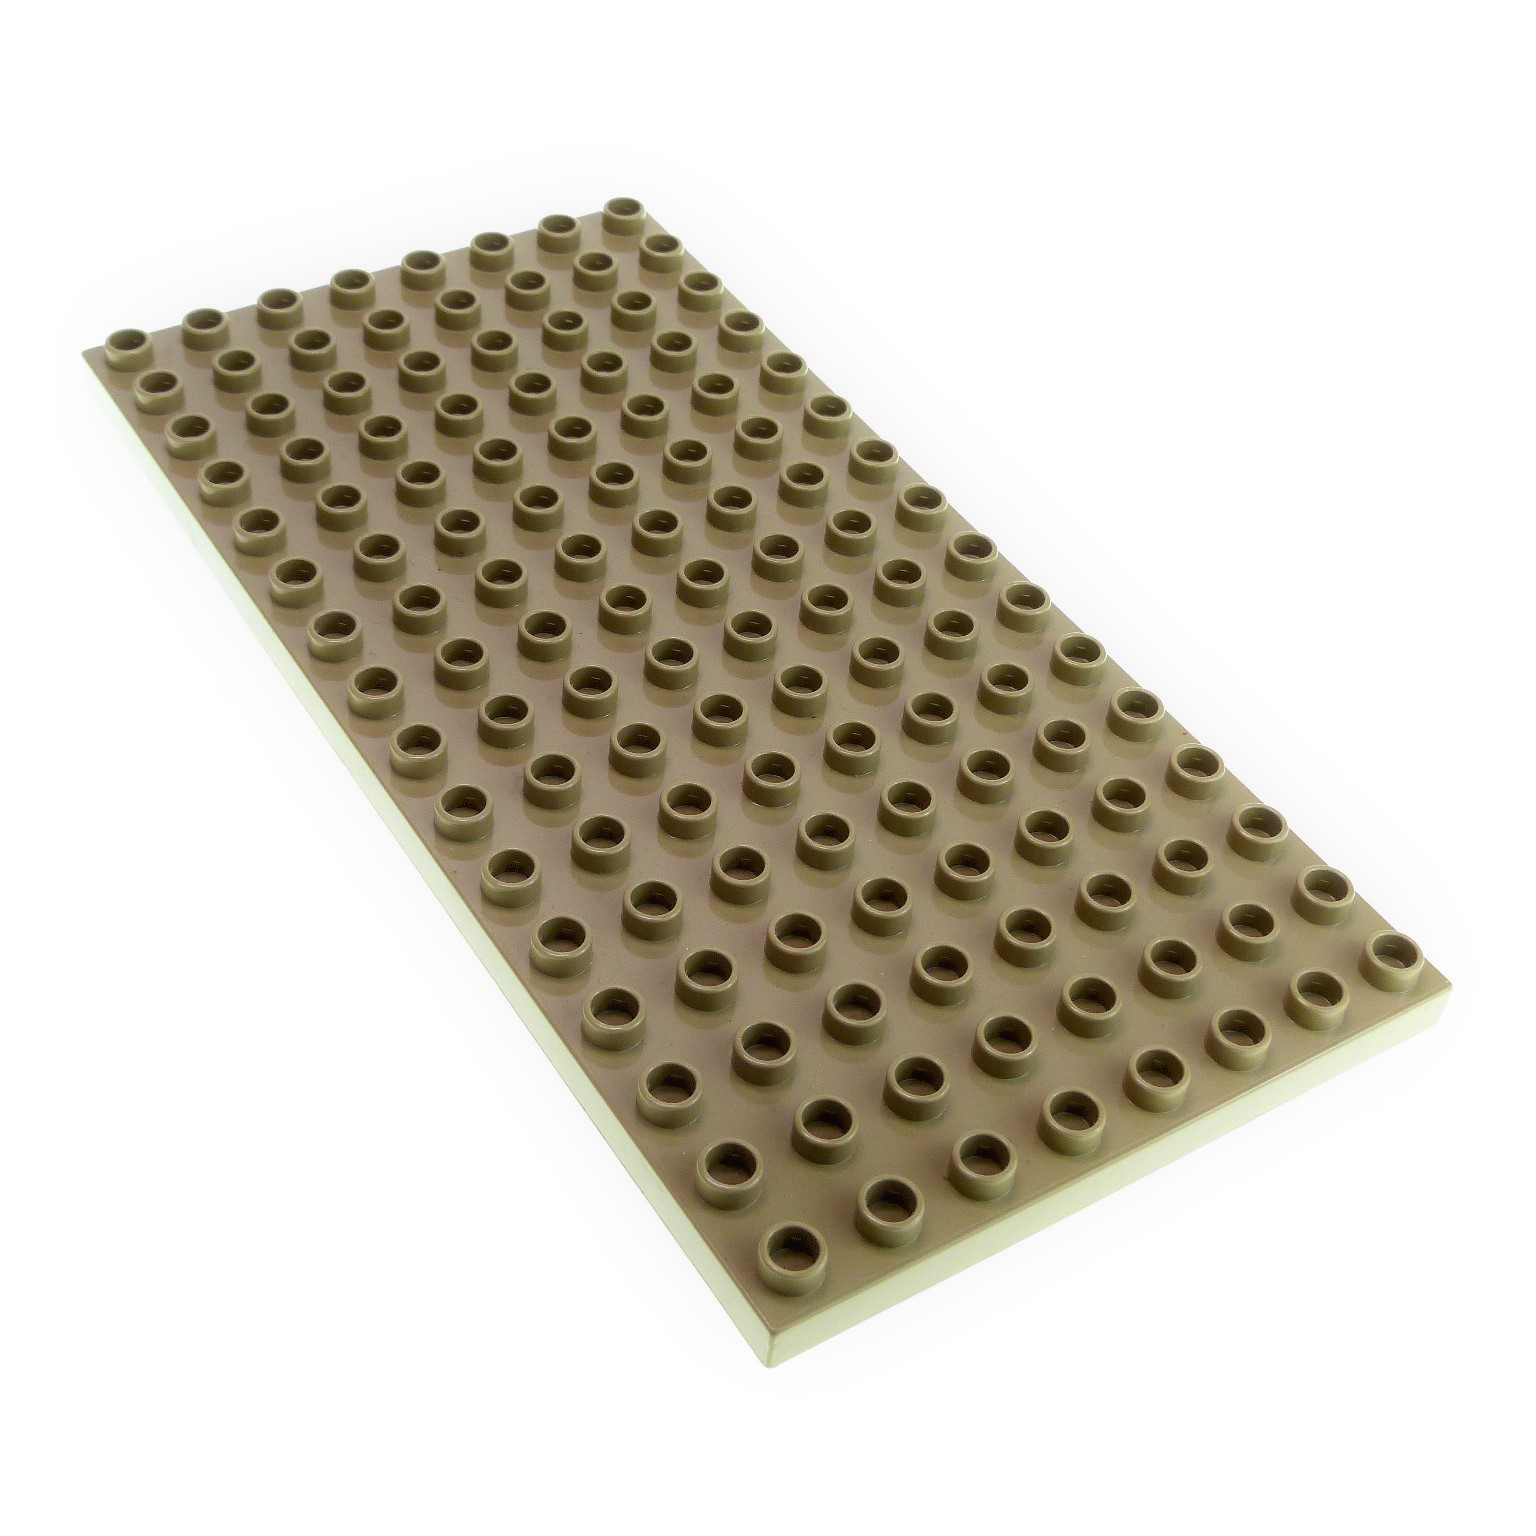 1x Lego Duplo Bau Basic Platte 8x16 alt-dunkel grau 4164493 6490 61310 